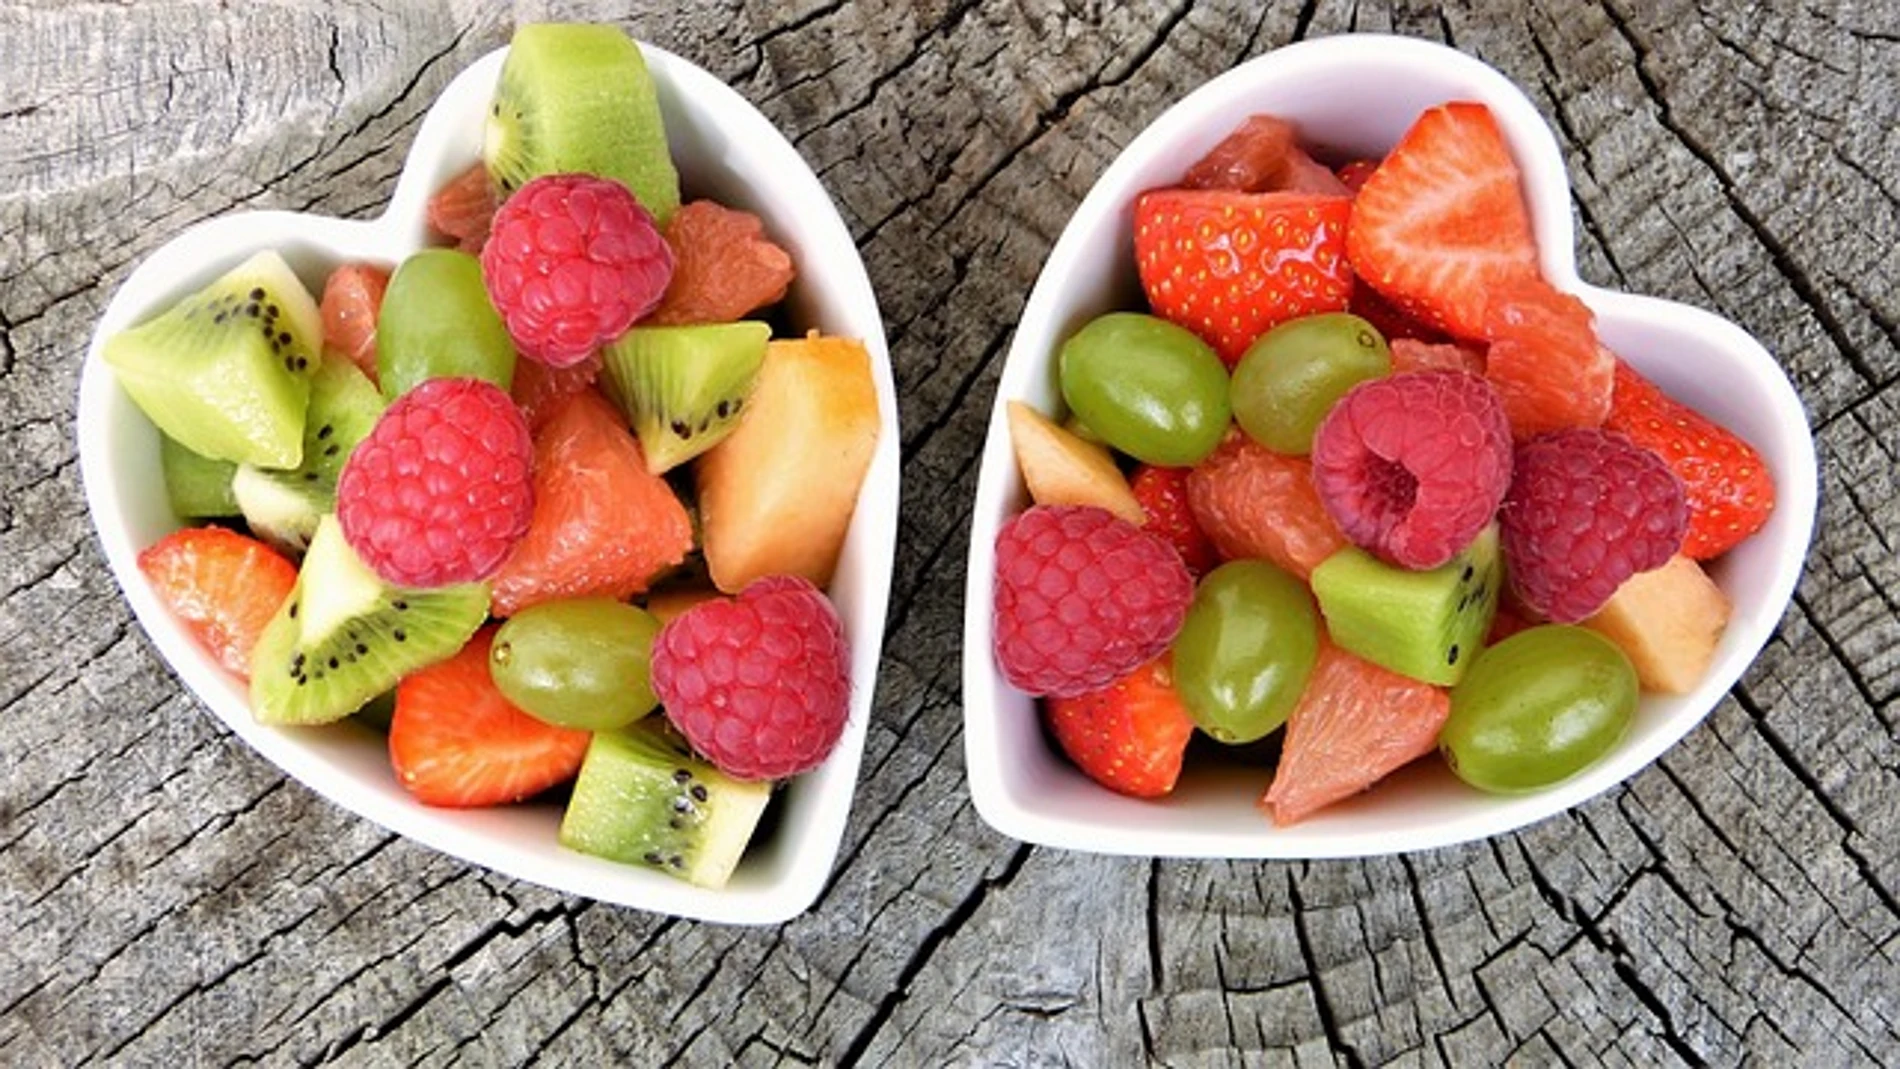 Frutos rojos: Beneficios y nutrientes para nuestro cuerpo